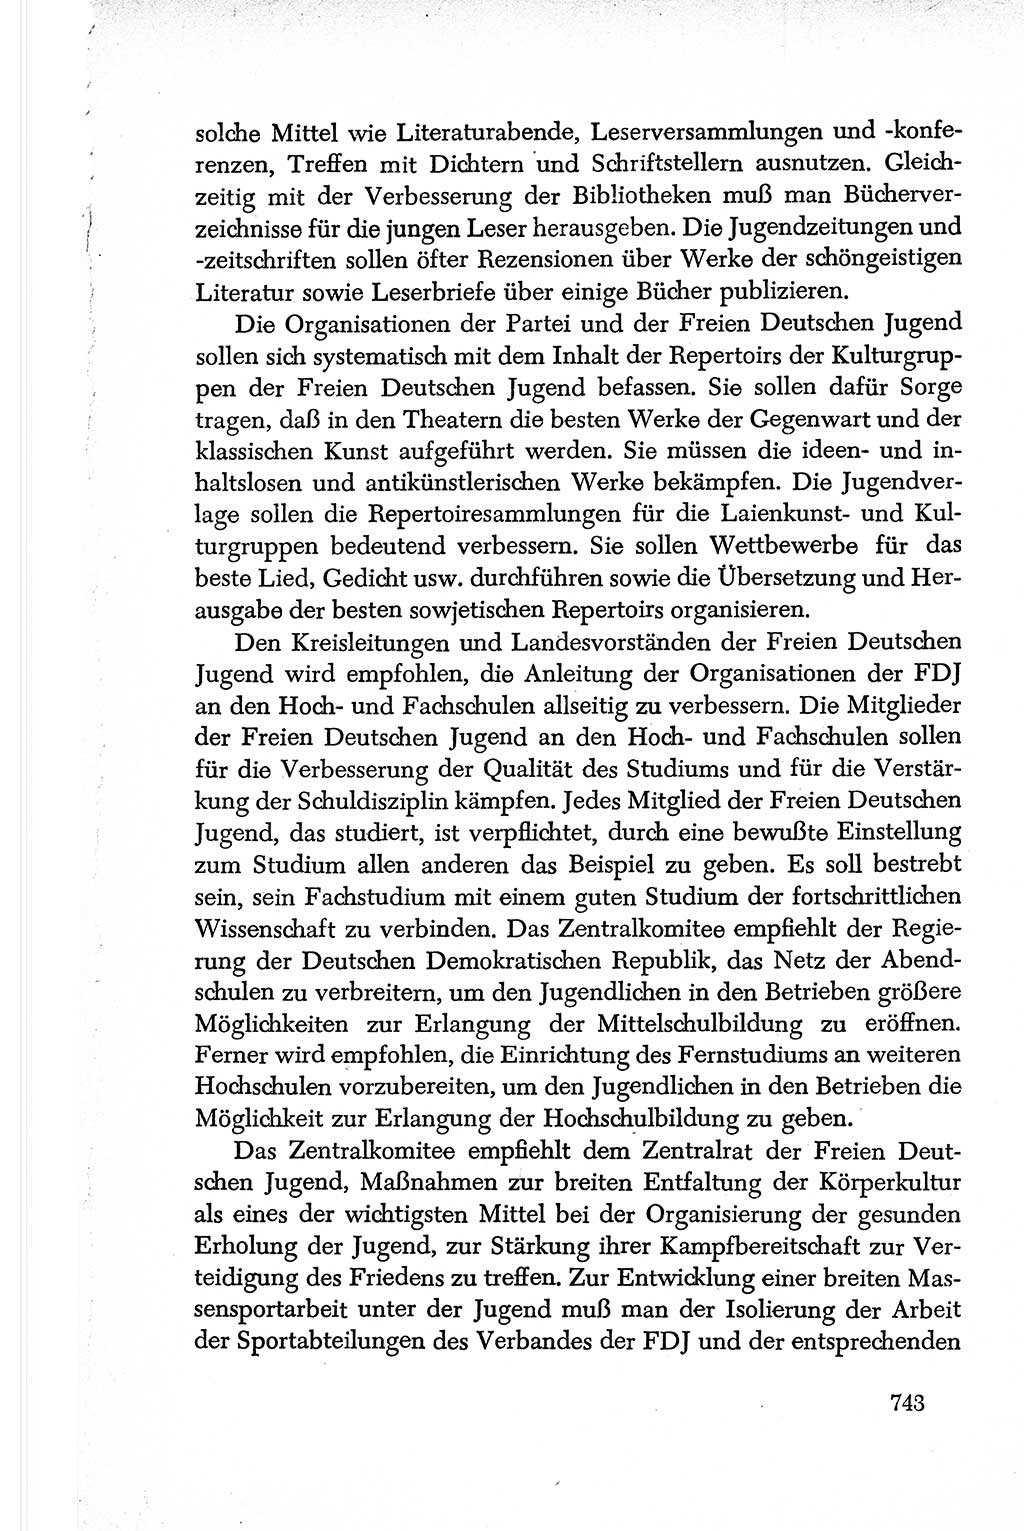 Dokumente der Sozialistischen Einheitspartei Deutschlands (SED) [Deutsche Demokratische Republik (DDR)] 1950-1952, Seite 743 (Dok. SED DDR 1950-1952, S. 743)